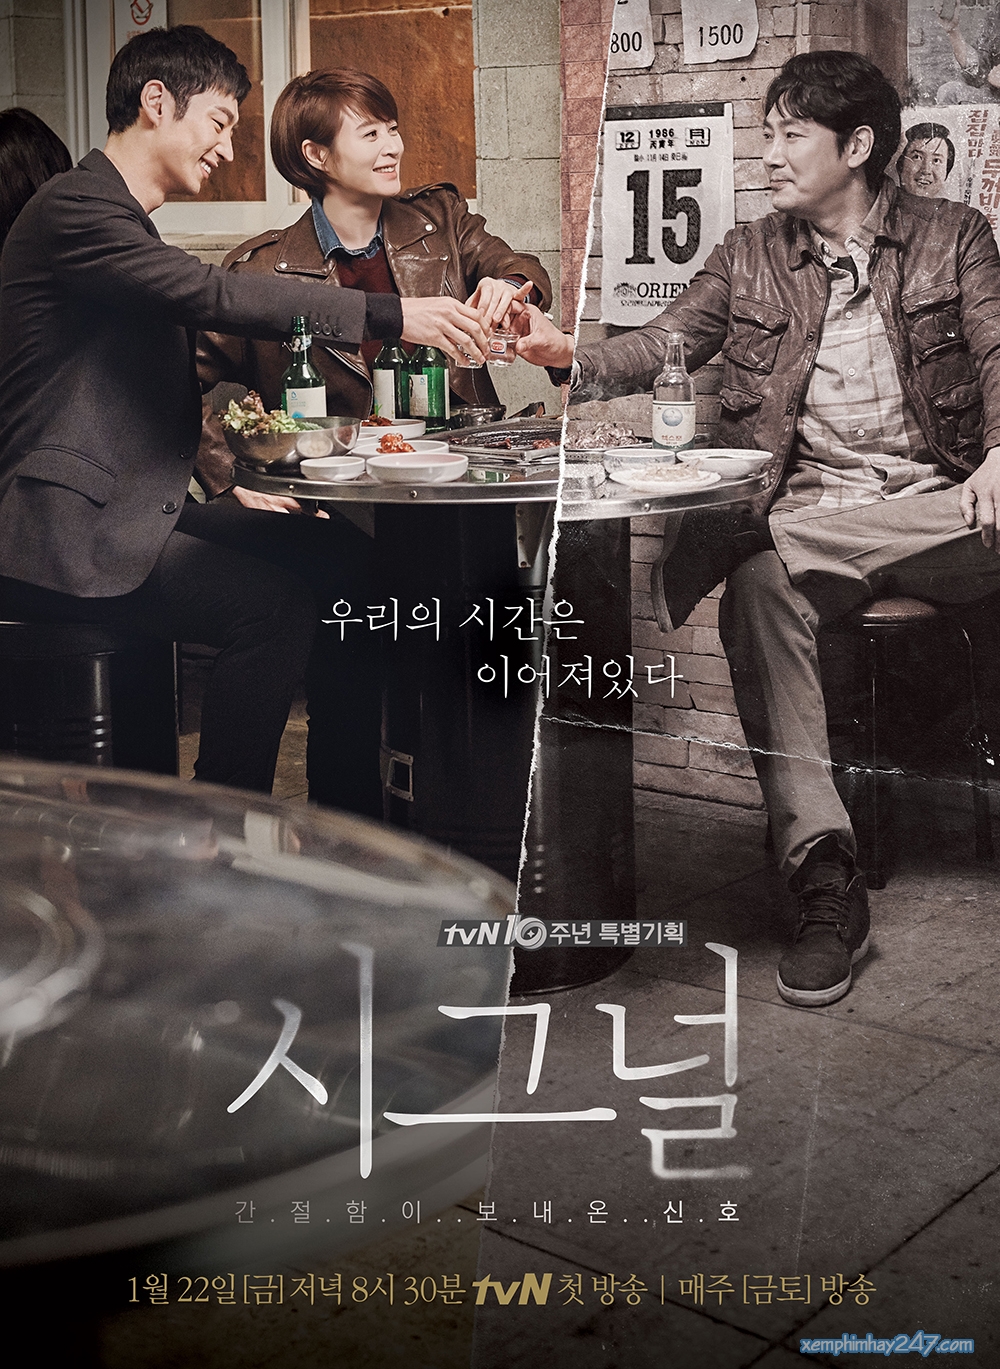 Phim hình sự Hàn Quốc: Tín hiệu - Signal (2016)